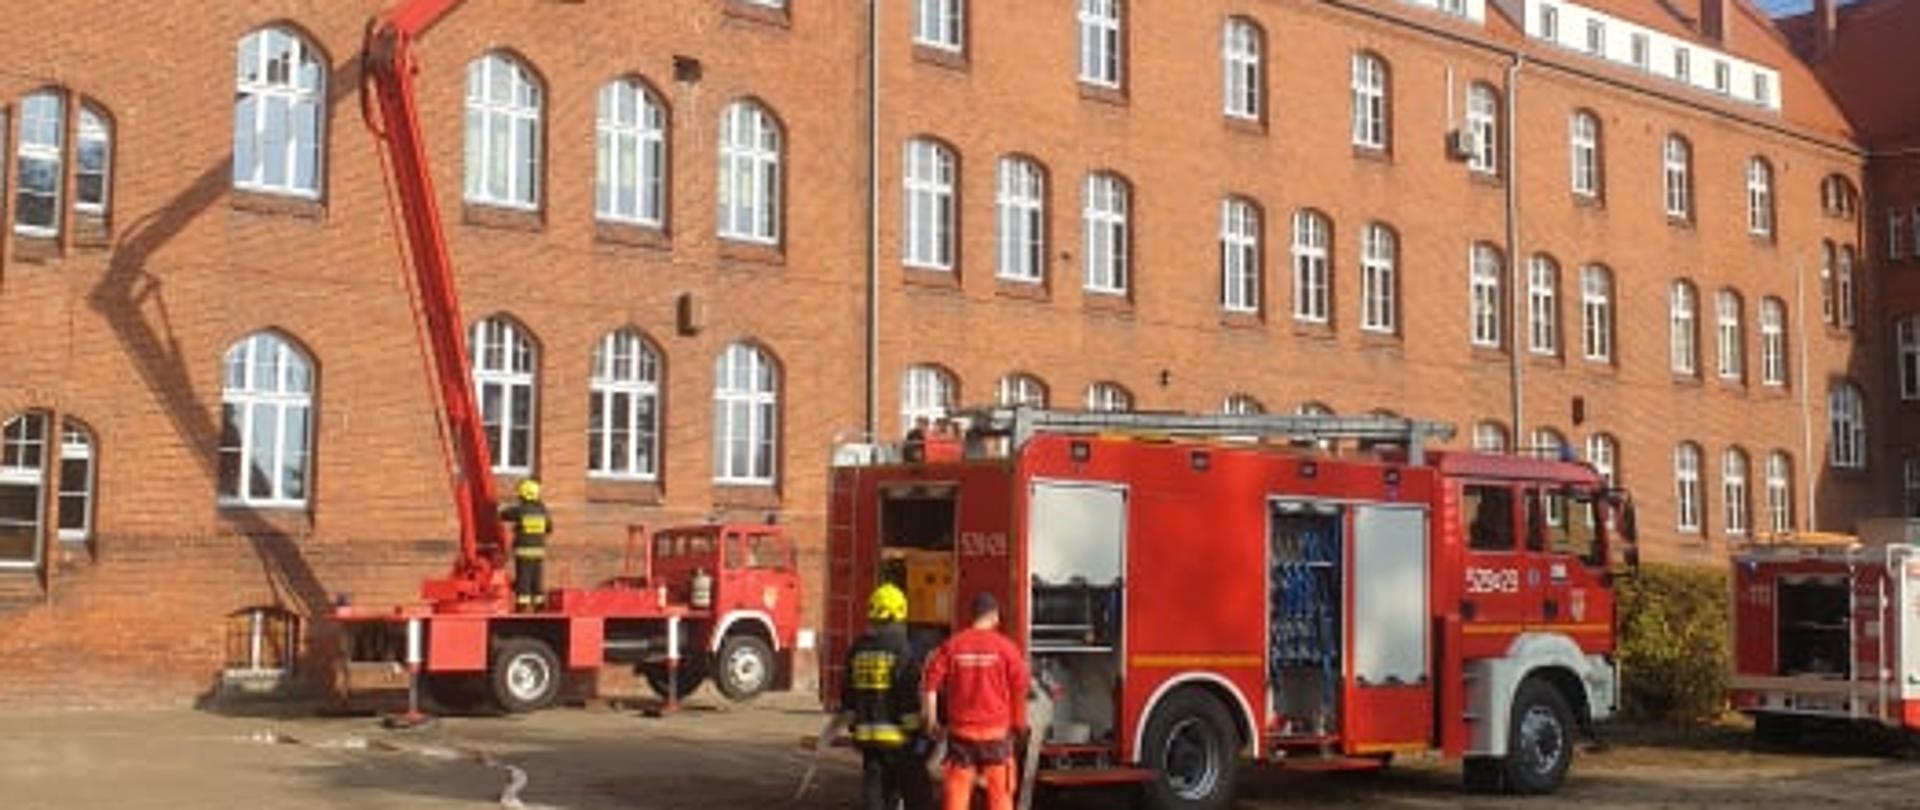 Zdjęcie przedstawia samochody pożarnicze na tle budynku szkoły.